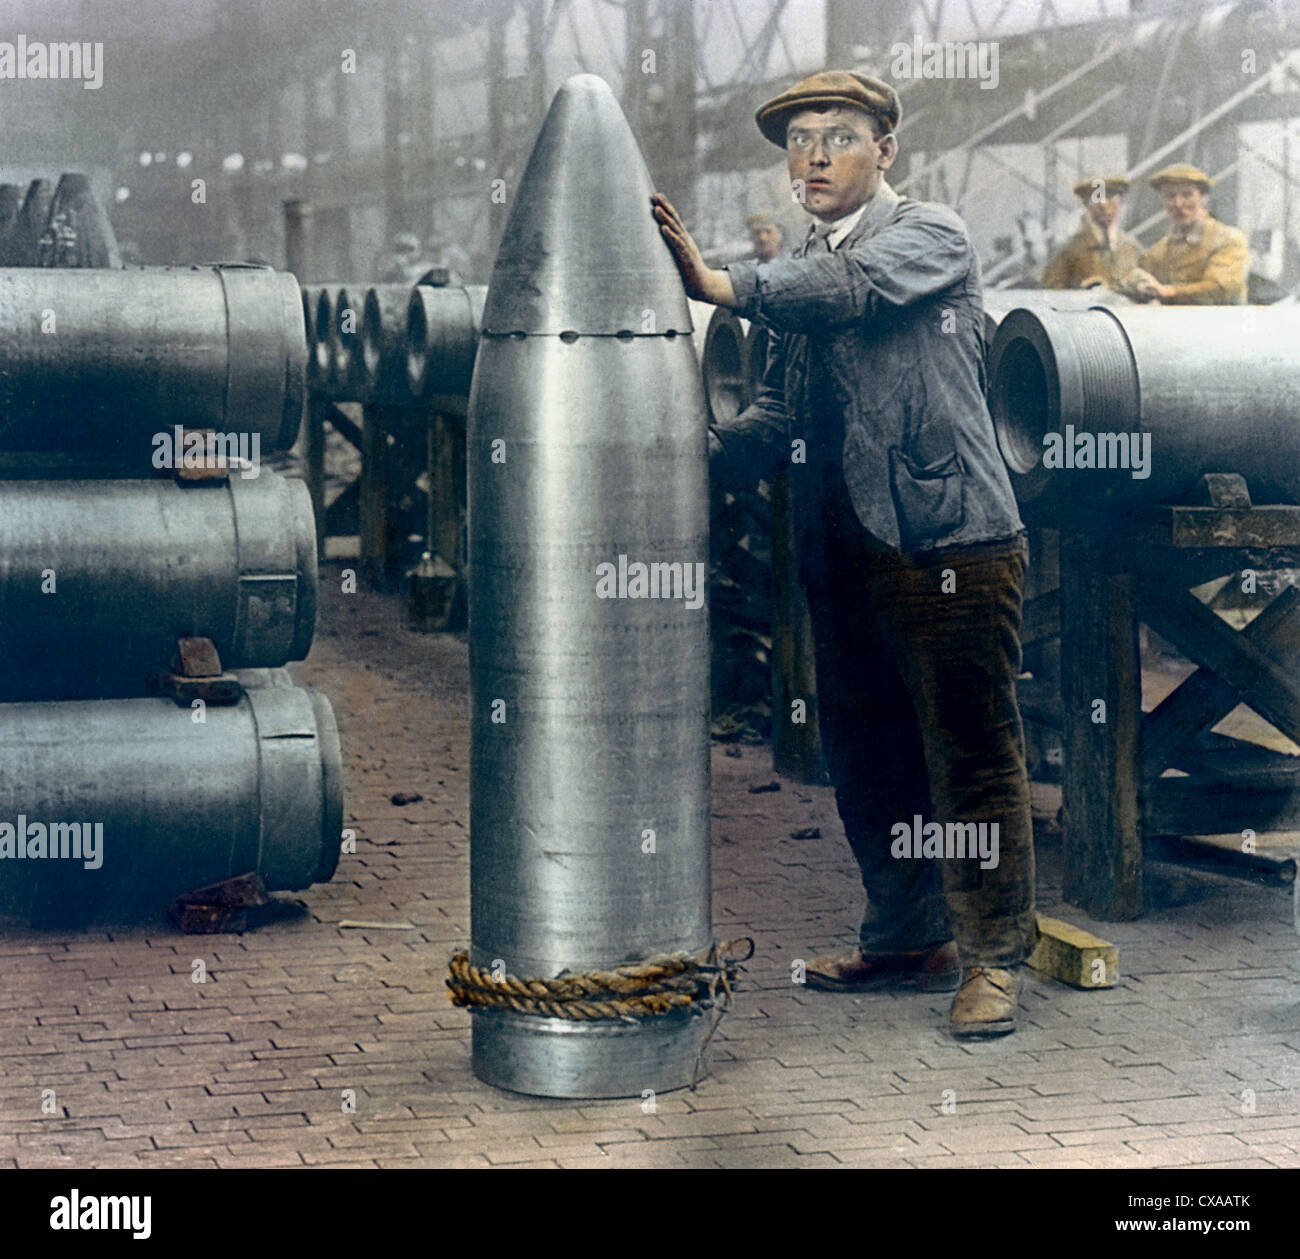 Koloriertes Foto eines männlichen Arbeiters, der neben einer großen Muschel in einer Munitionsfabrik, England, 1918, steht. (Foto von Burton Holmes) Stockfoto